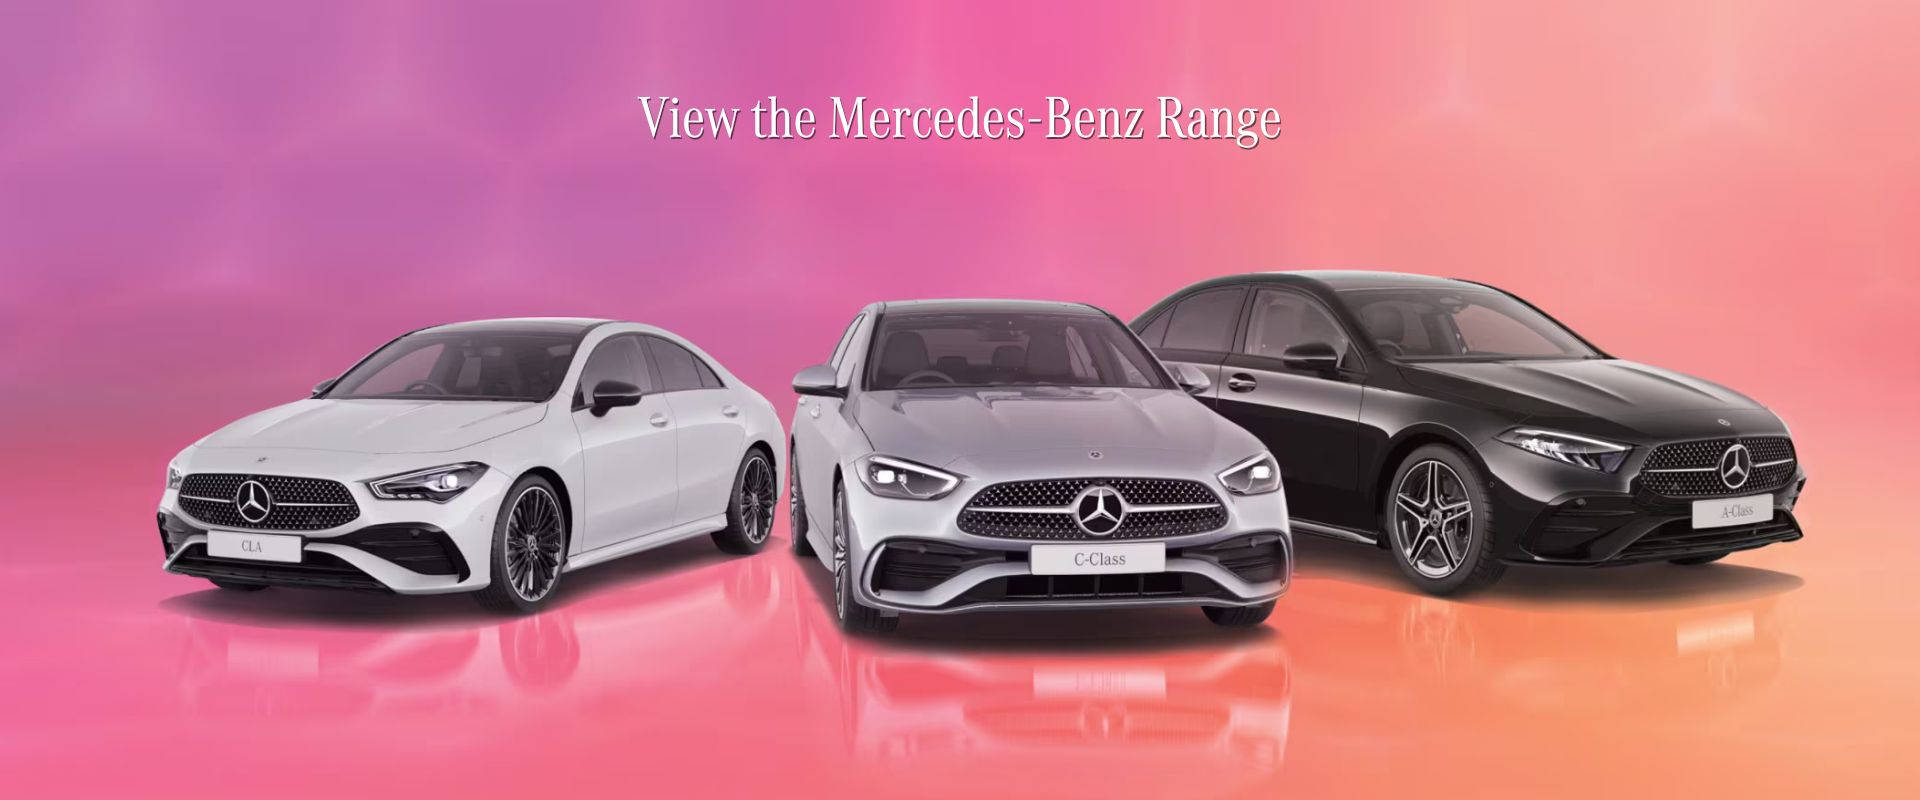 Discover the Mercede-Benz Range